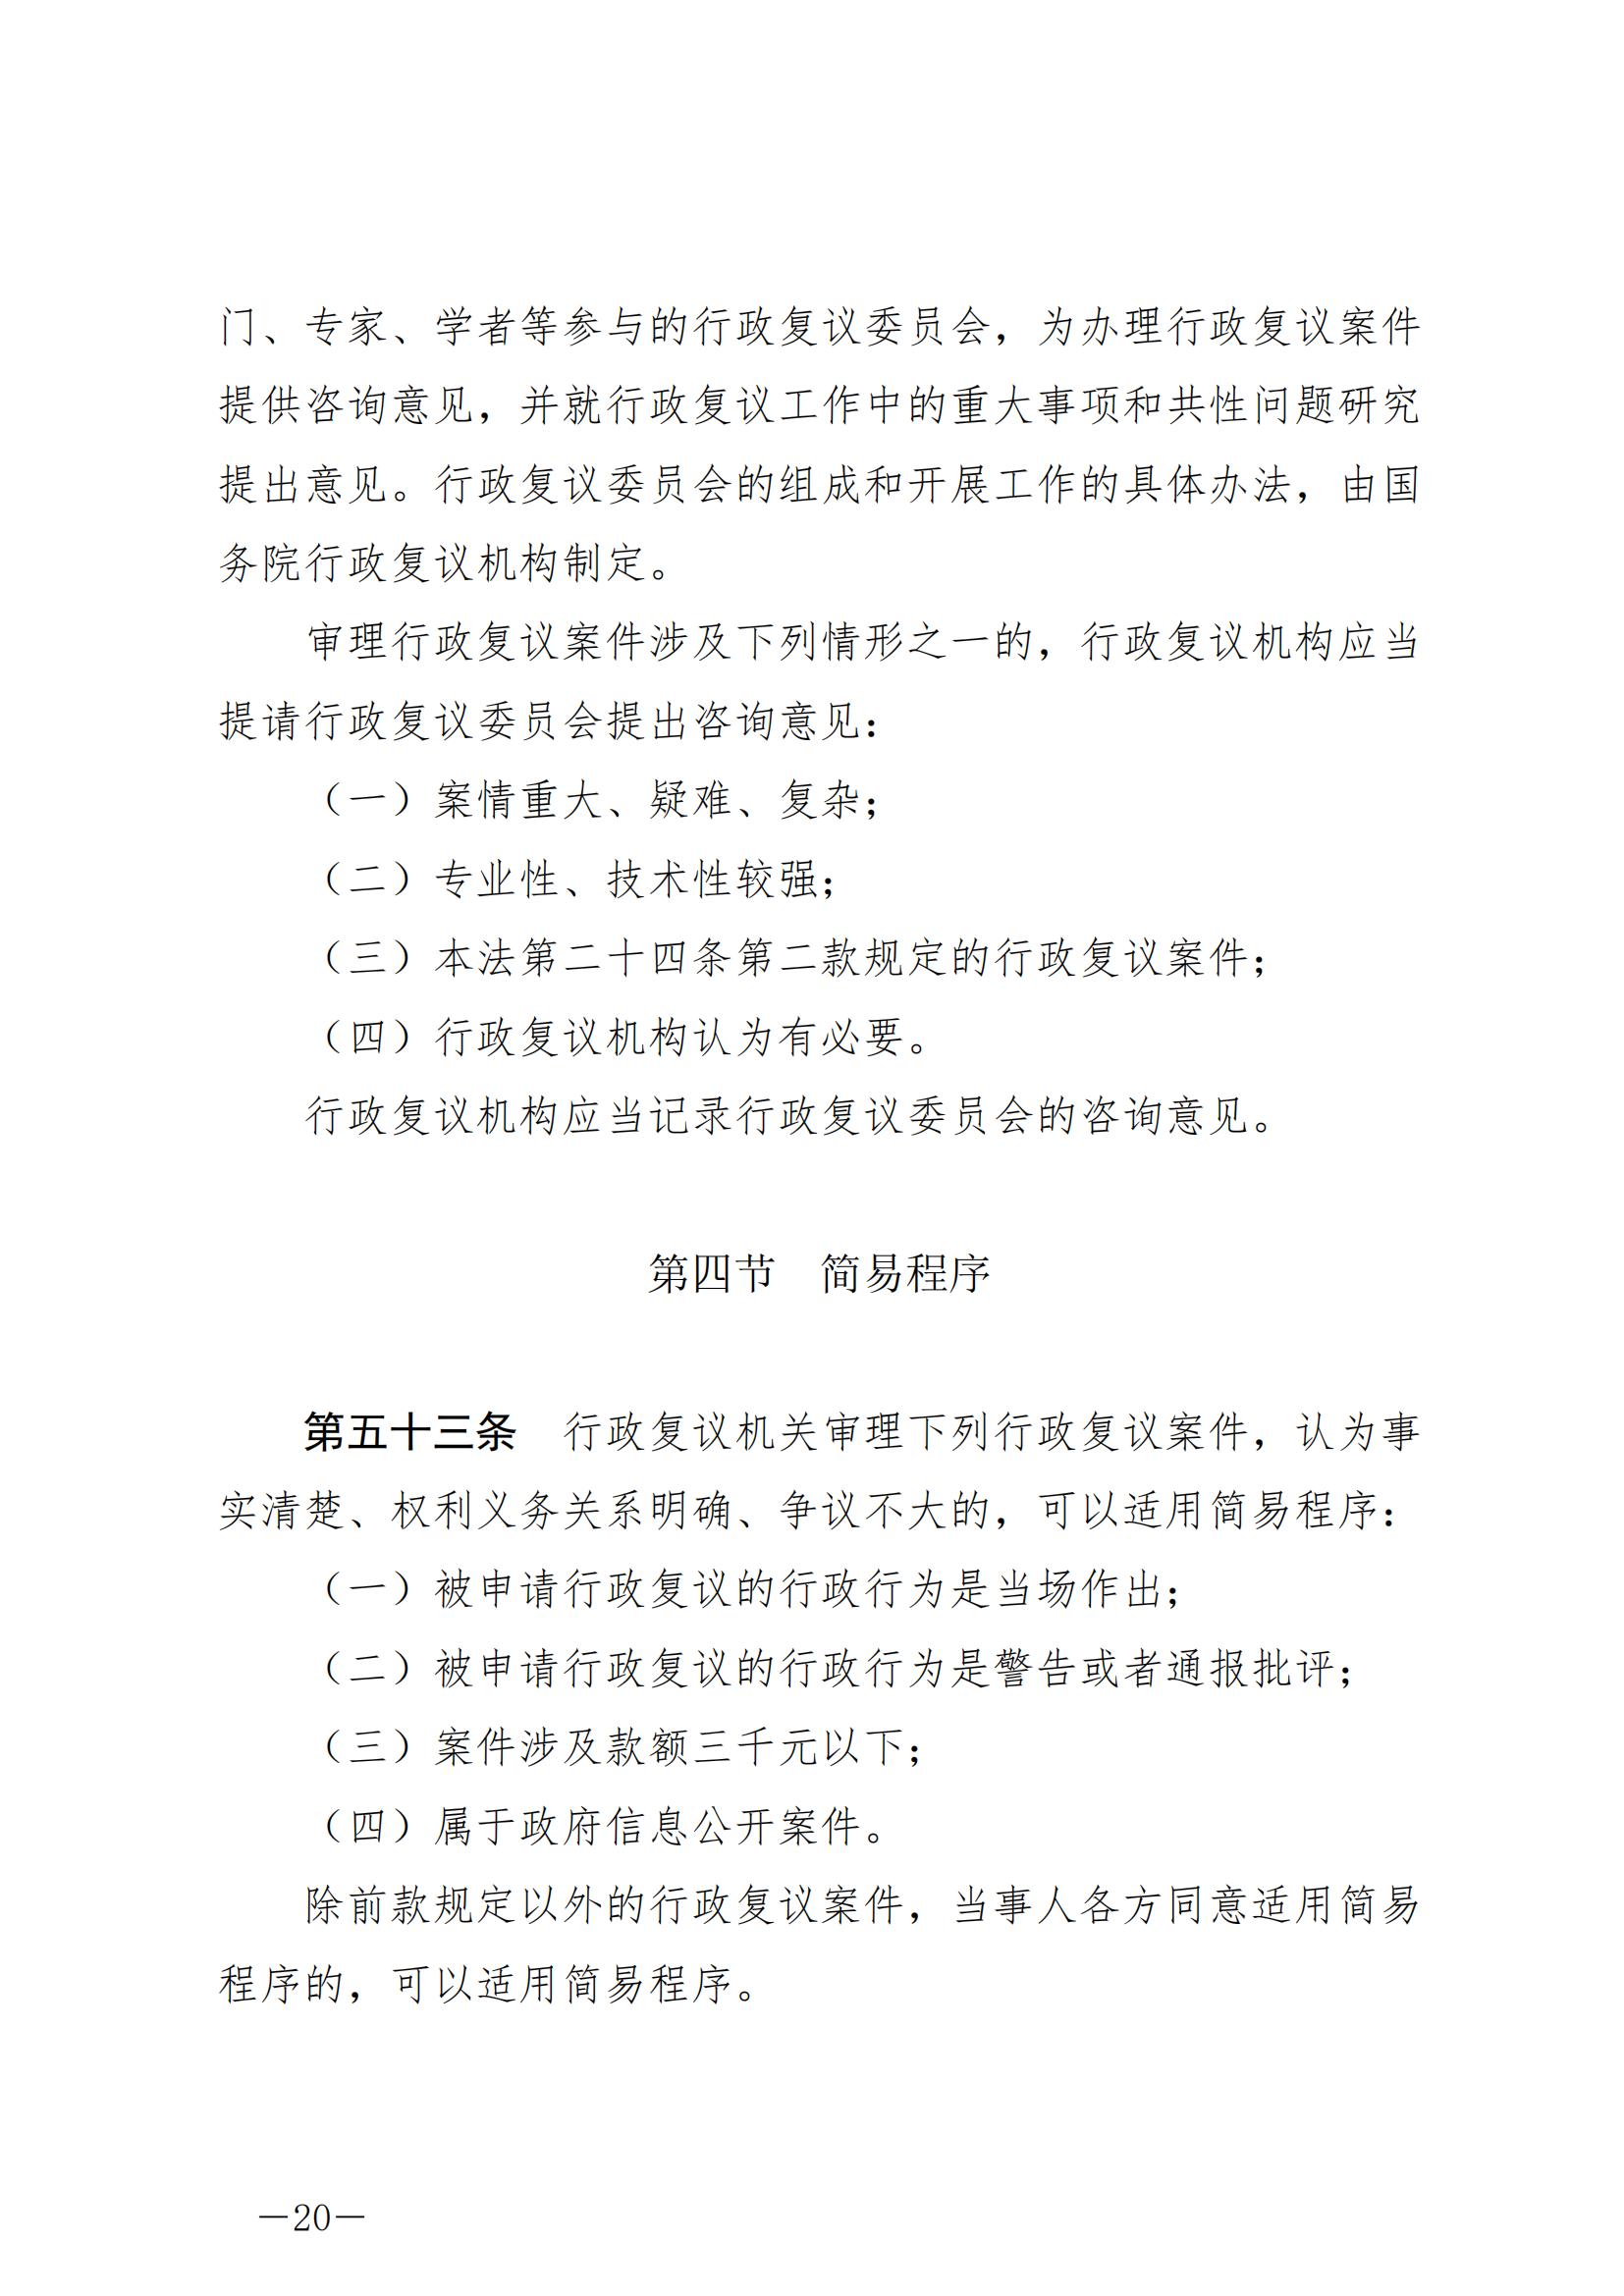 《中华人民共和国行政复议法》_20231204154310_19.jpg